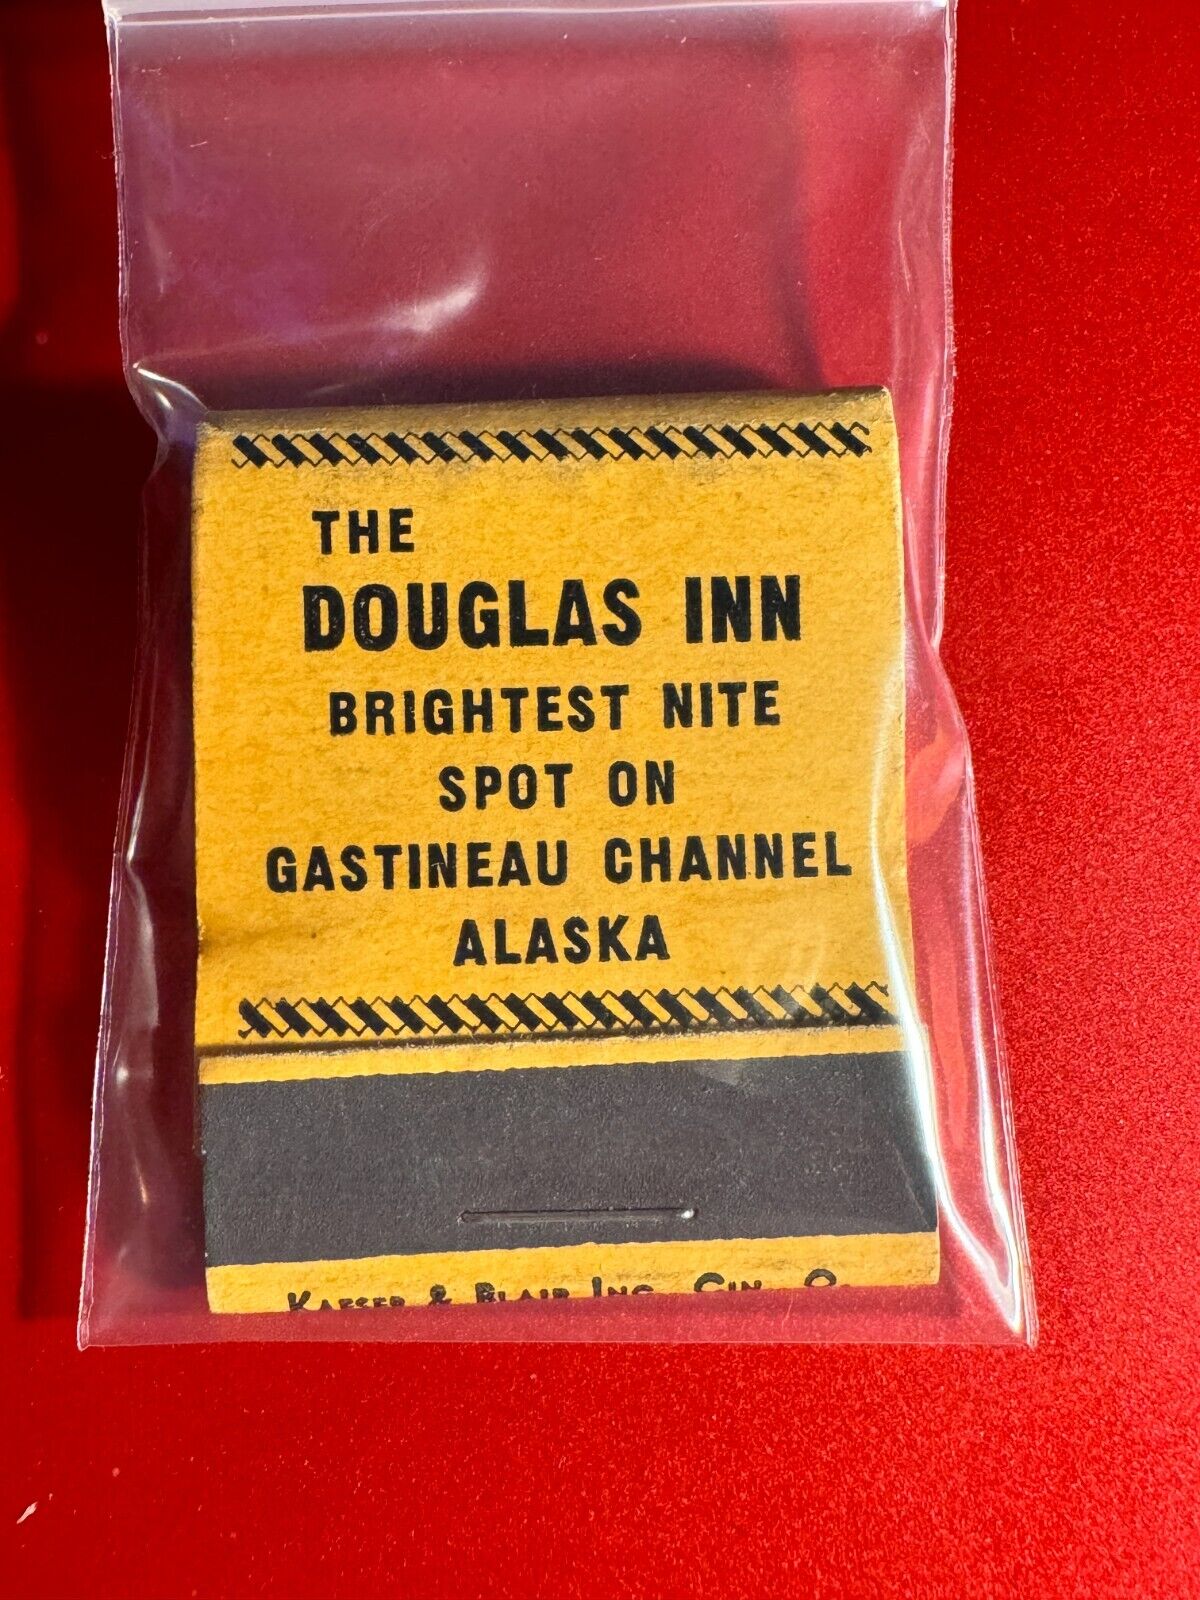 MATCHBOOK - THE DOUGLAS INN RESTAURANT - GASTINEAU CHANNEL, ALASKA - UNSTRUCK